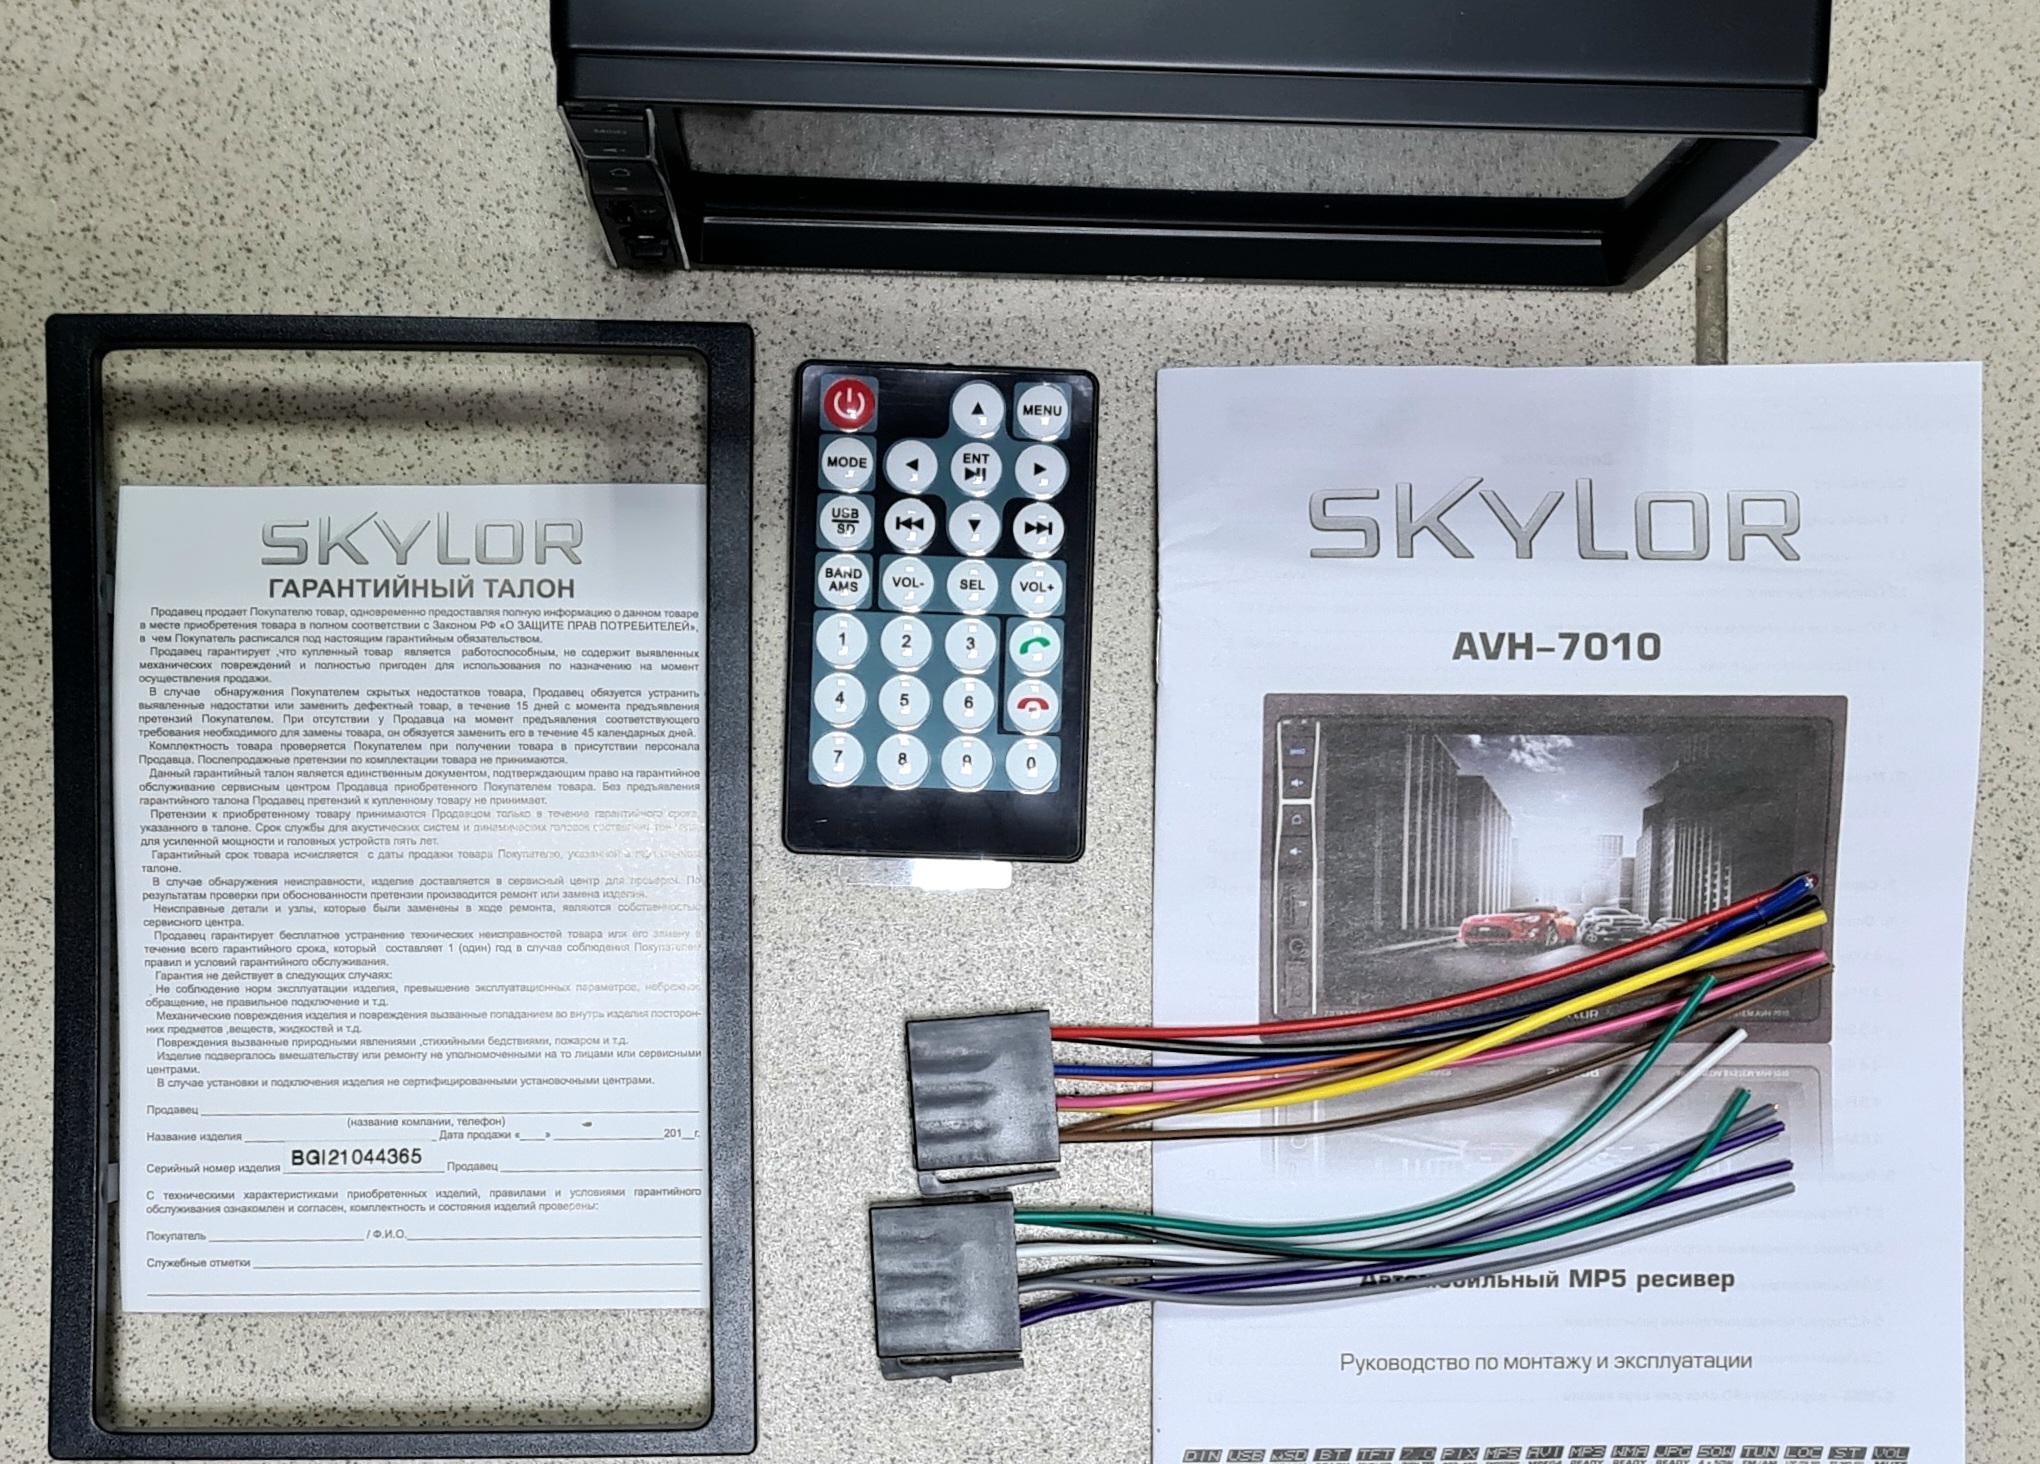 Skylor AVH-7010 » Автомагнитолы